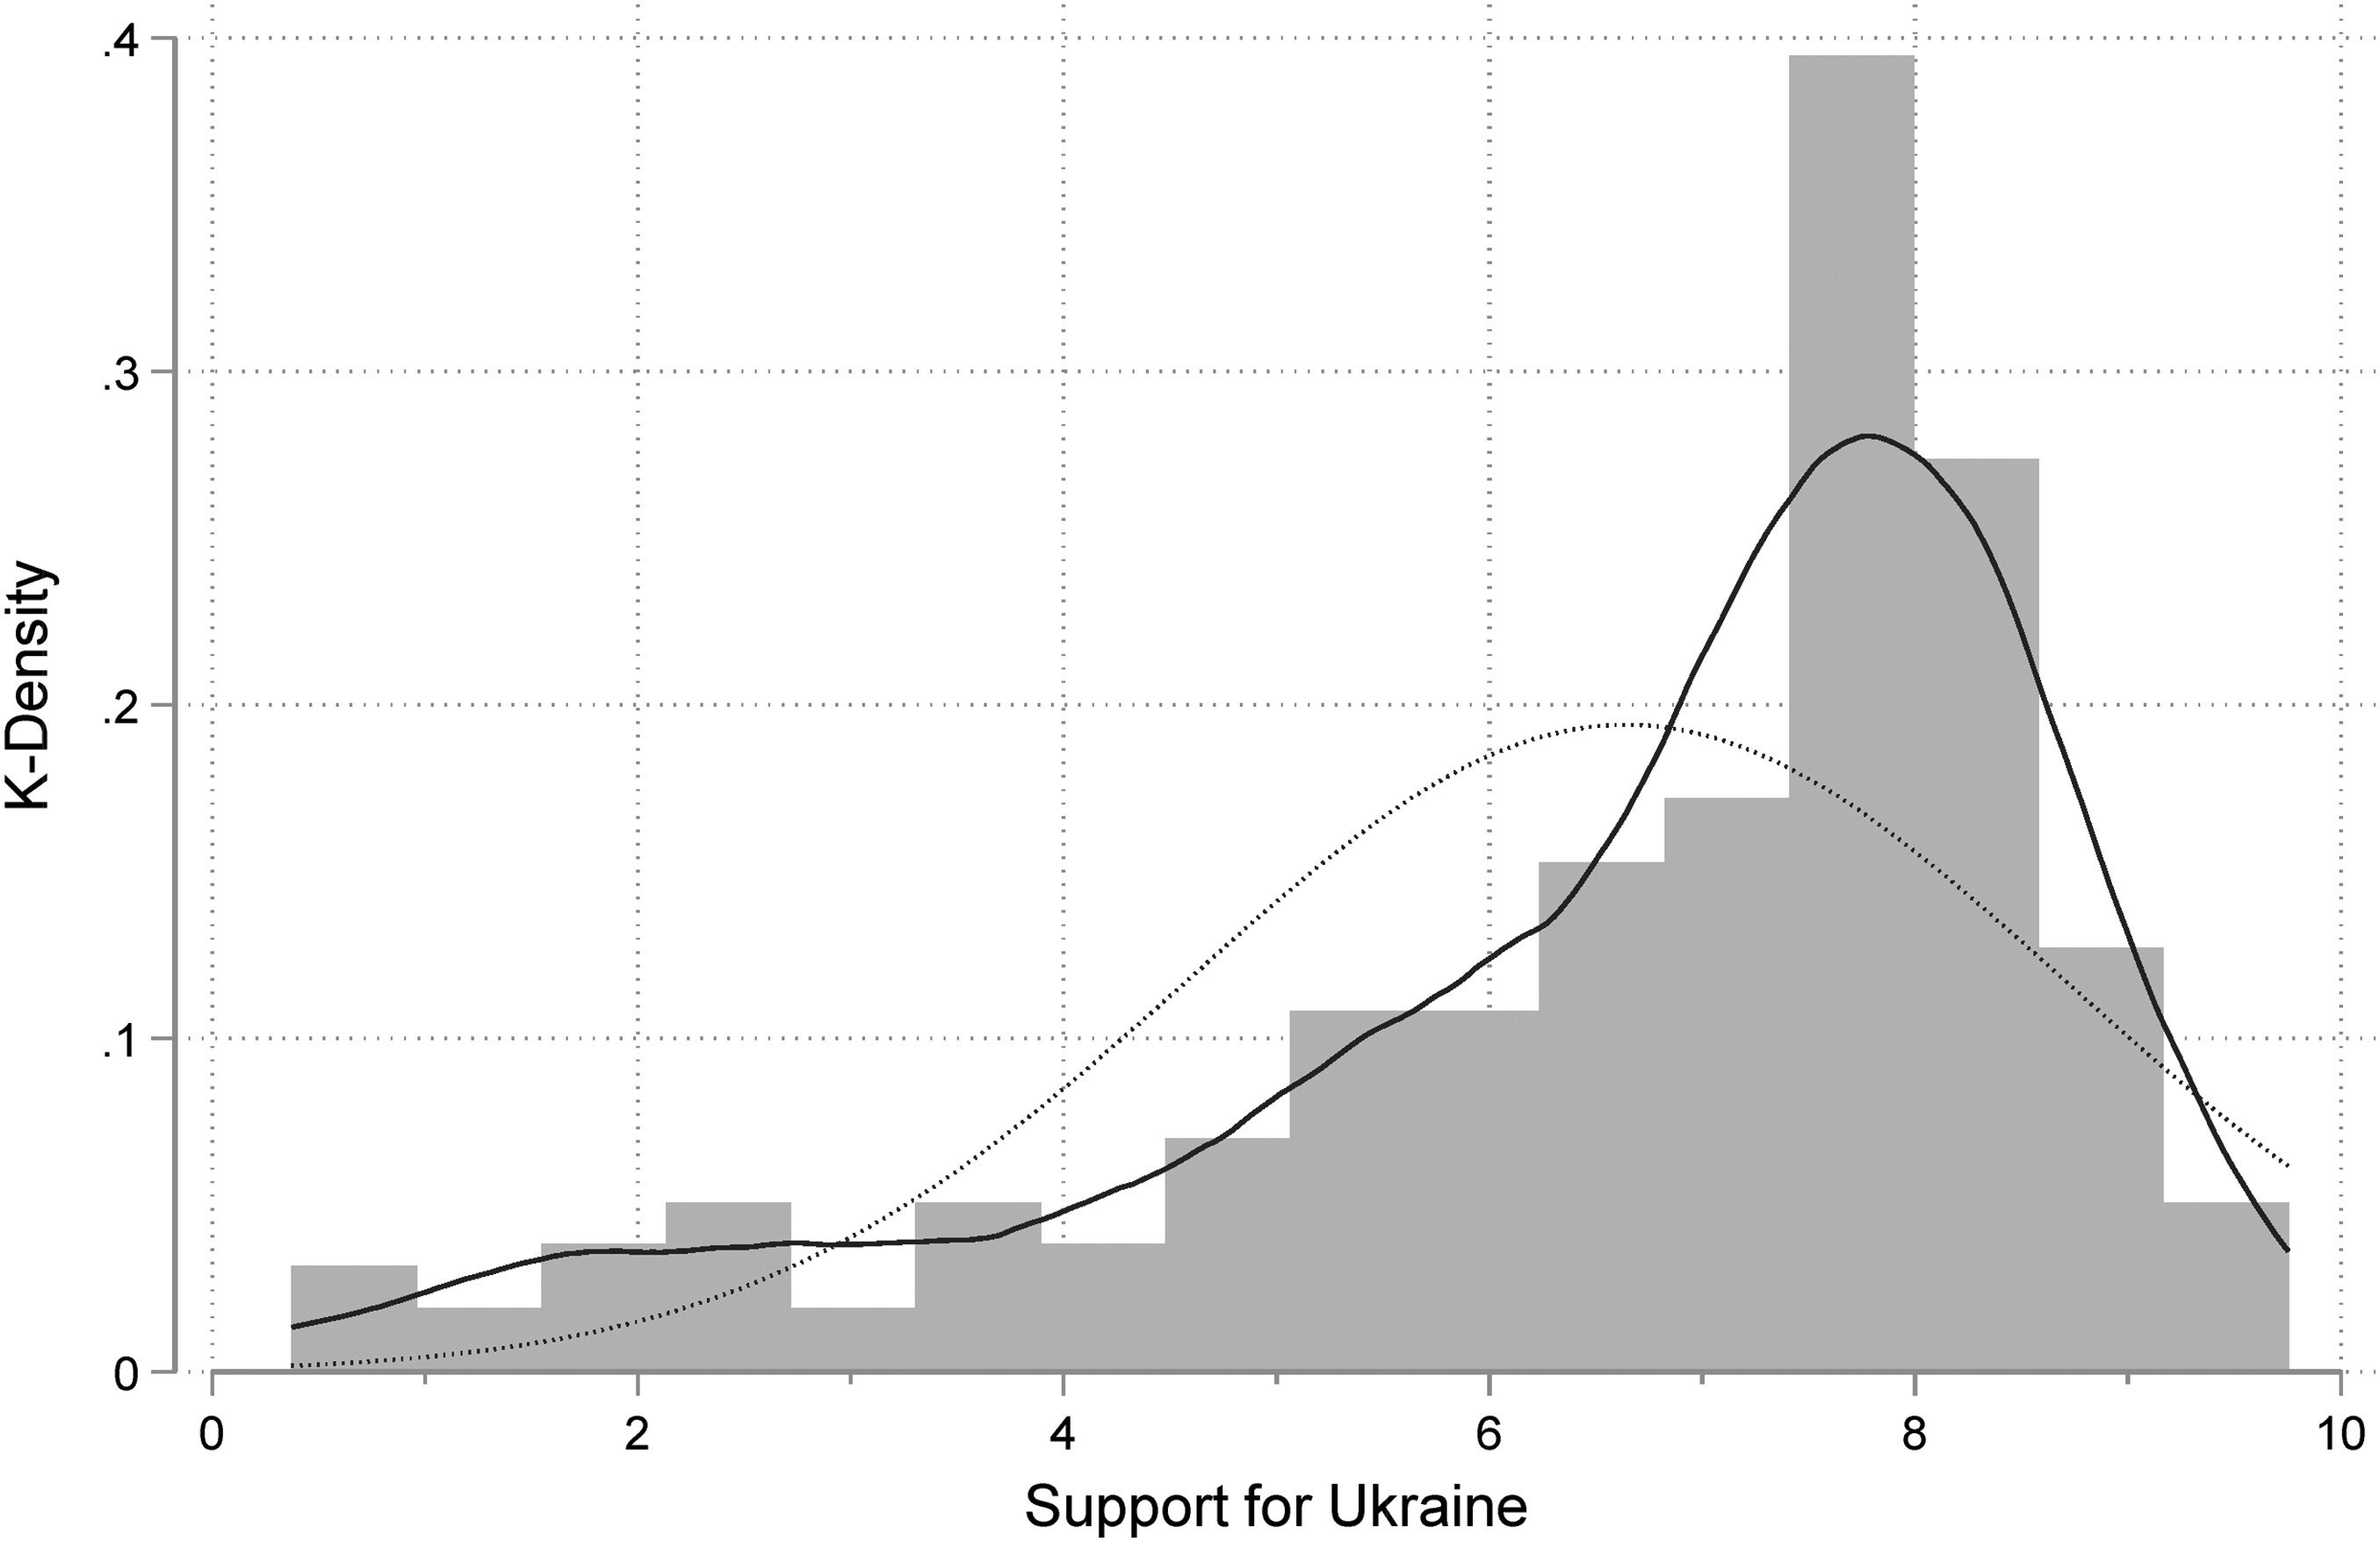 Розподіл підтримки України серед 269 партій у 29 країнах Європи у 2023 році. Суцільна лінія — крива k-щільності; пунктирна лінія — крива нормального розподілу. Вищі значення на осі абсцис означають більшу підтримку України.